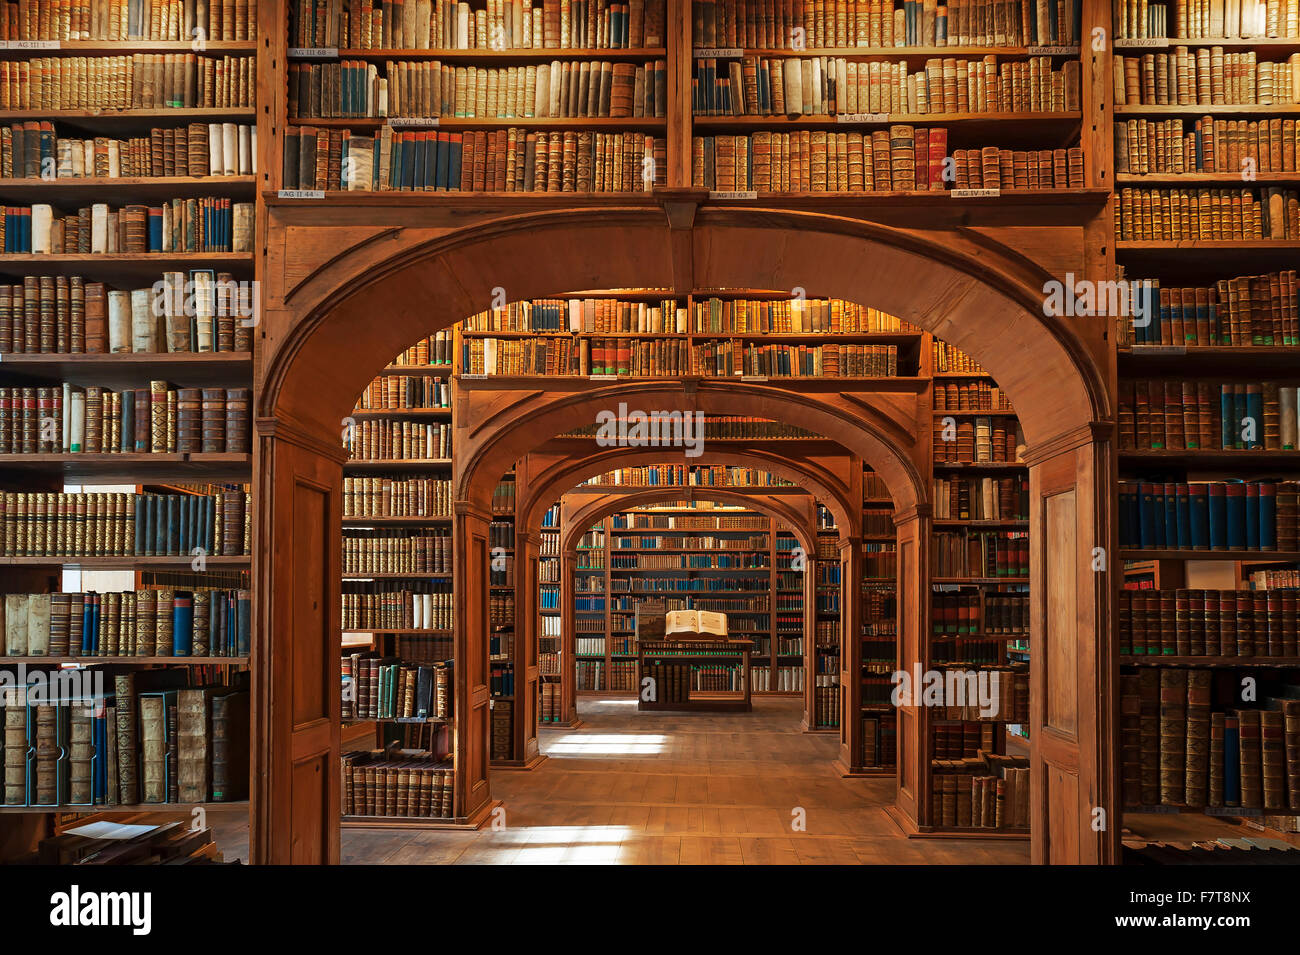 Bibliothèque scientifique Oberlausitzer, Görlitz, Syd, Saxe, Allemagne Banque D'Images